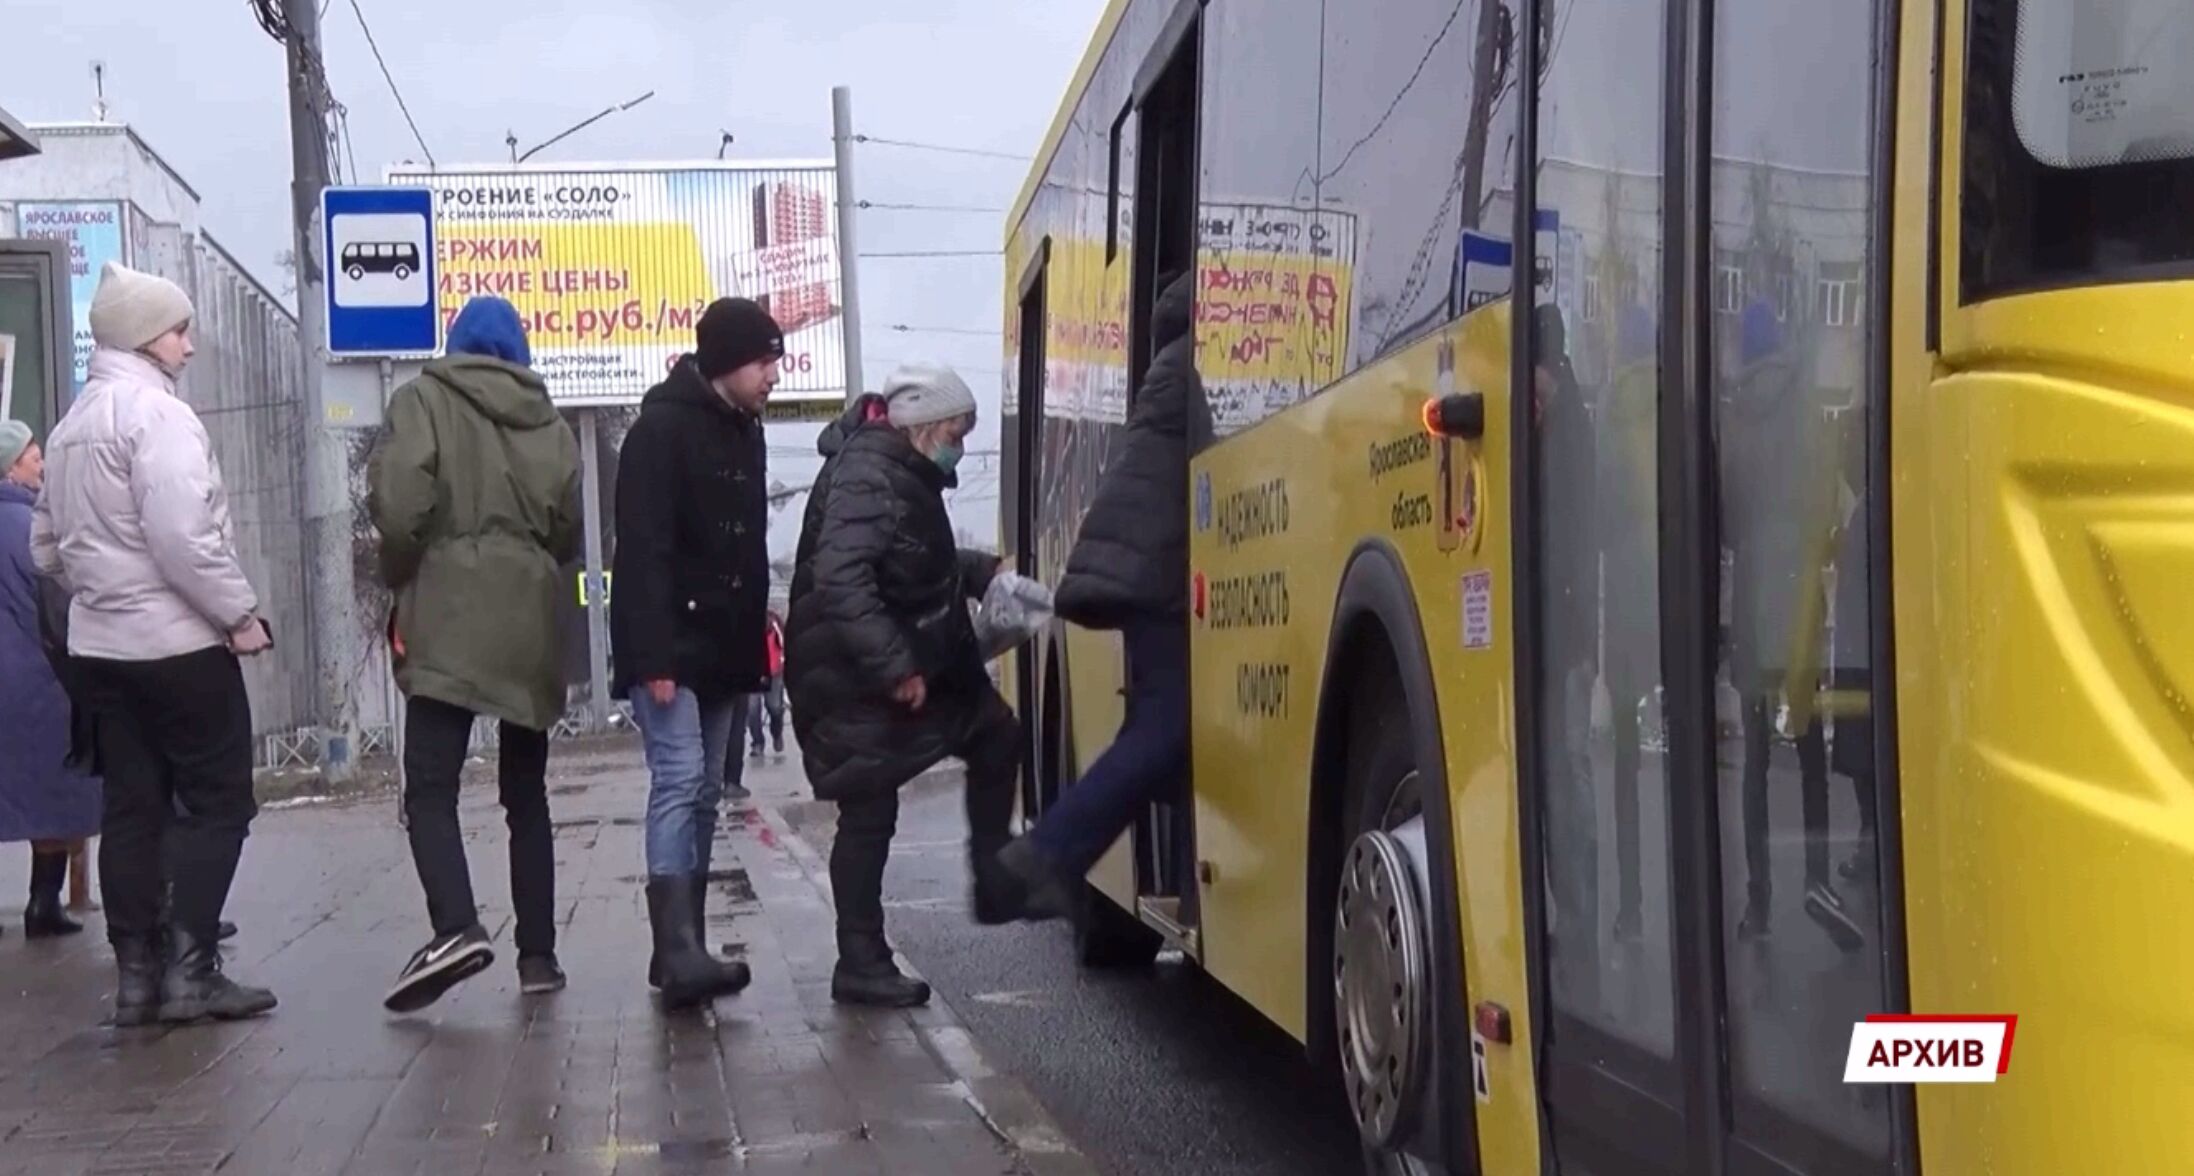 Ехать тесно, ждать долго, еще и хамят: в мэрии Ярославля назвали номера проблемных автобусных маршрутов